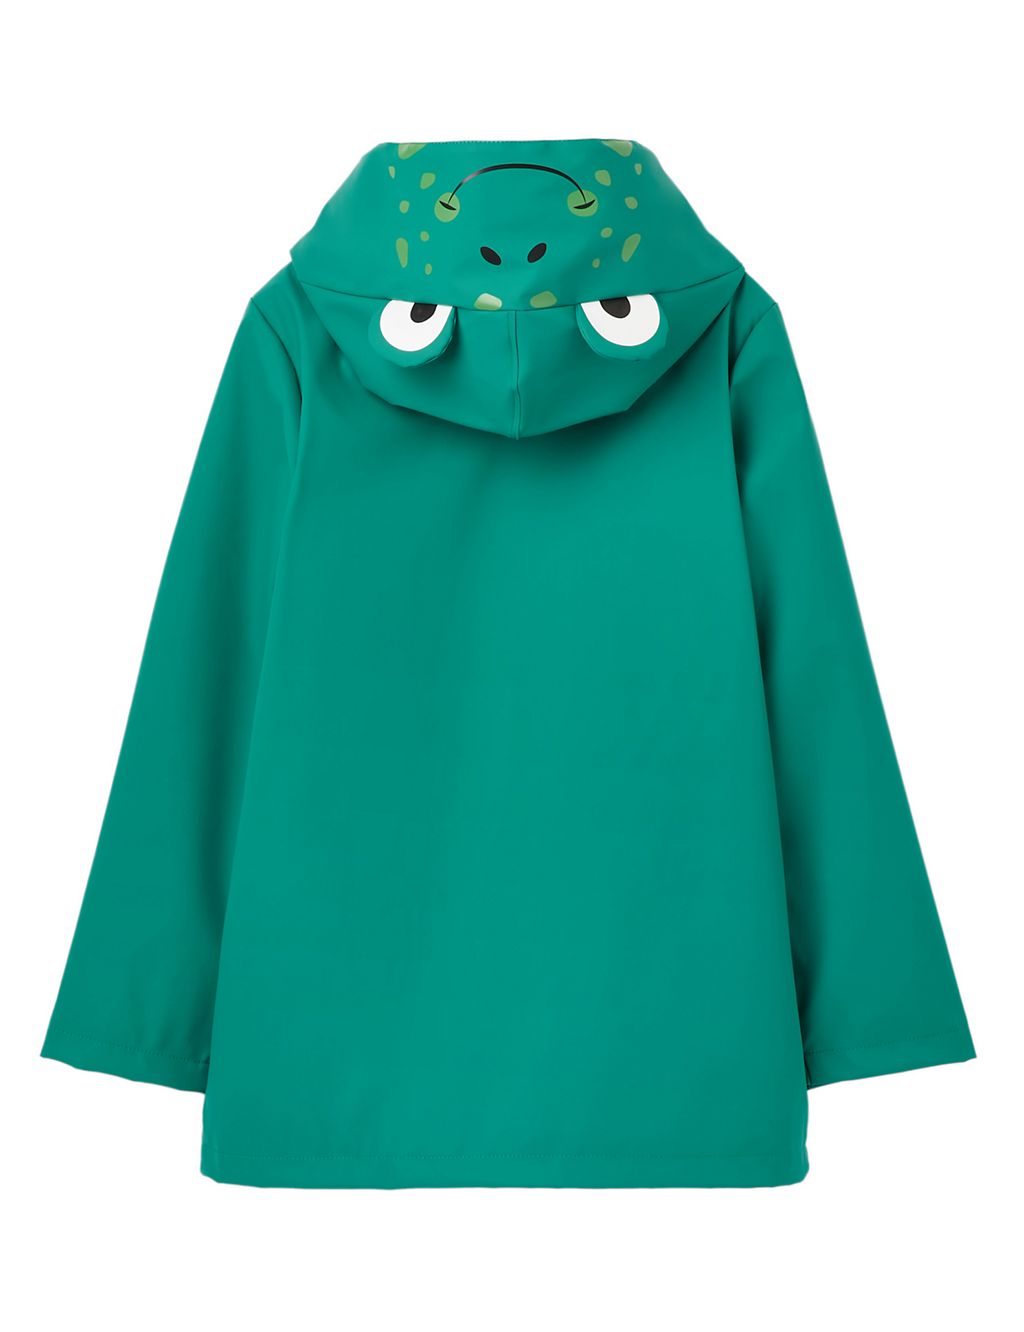 Frog Hooded Fleece Lined Raincoat (2-7 Yrs) 1 of 5